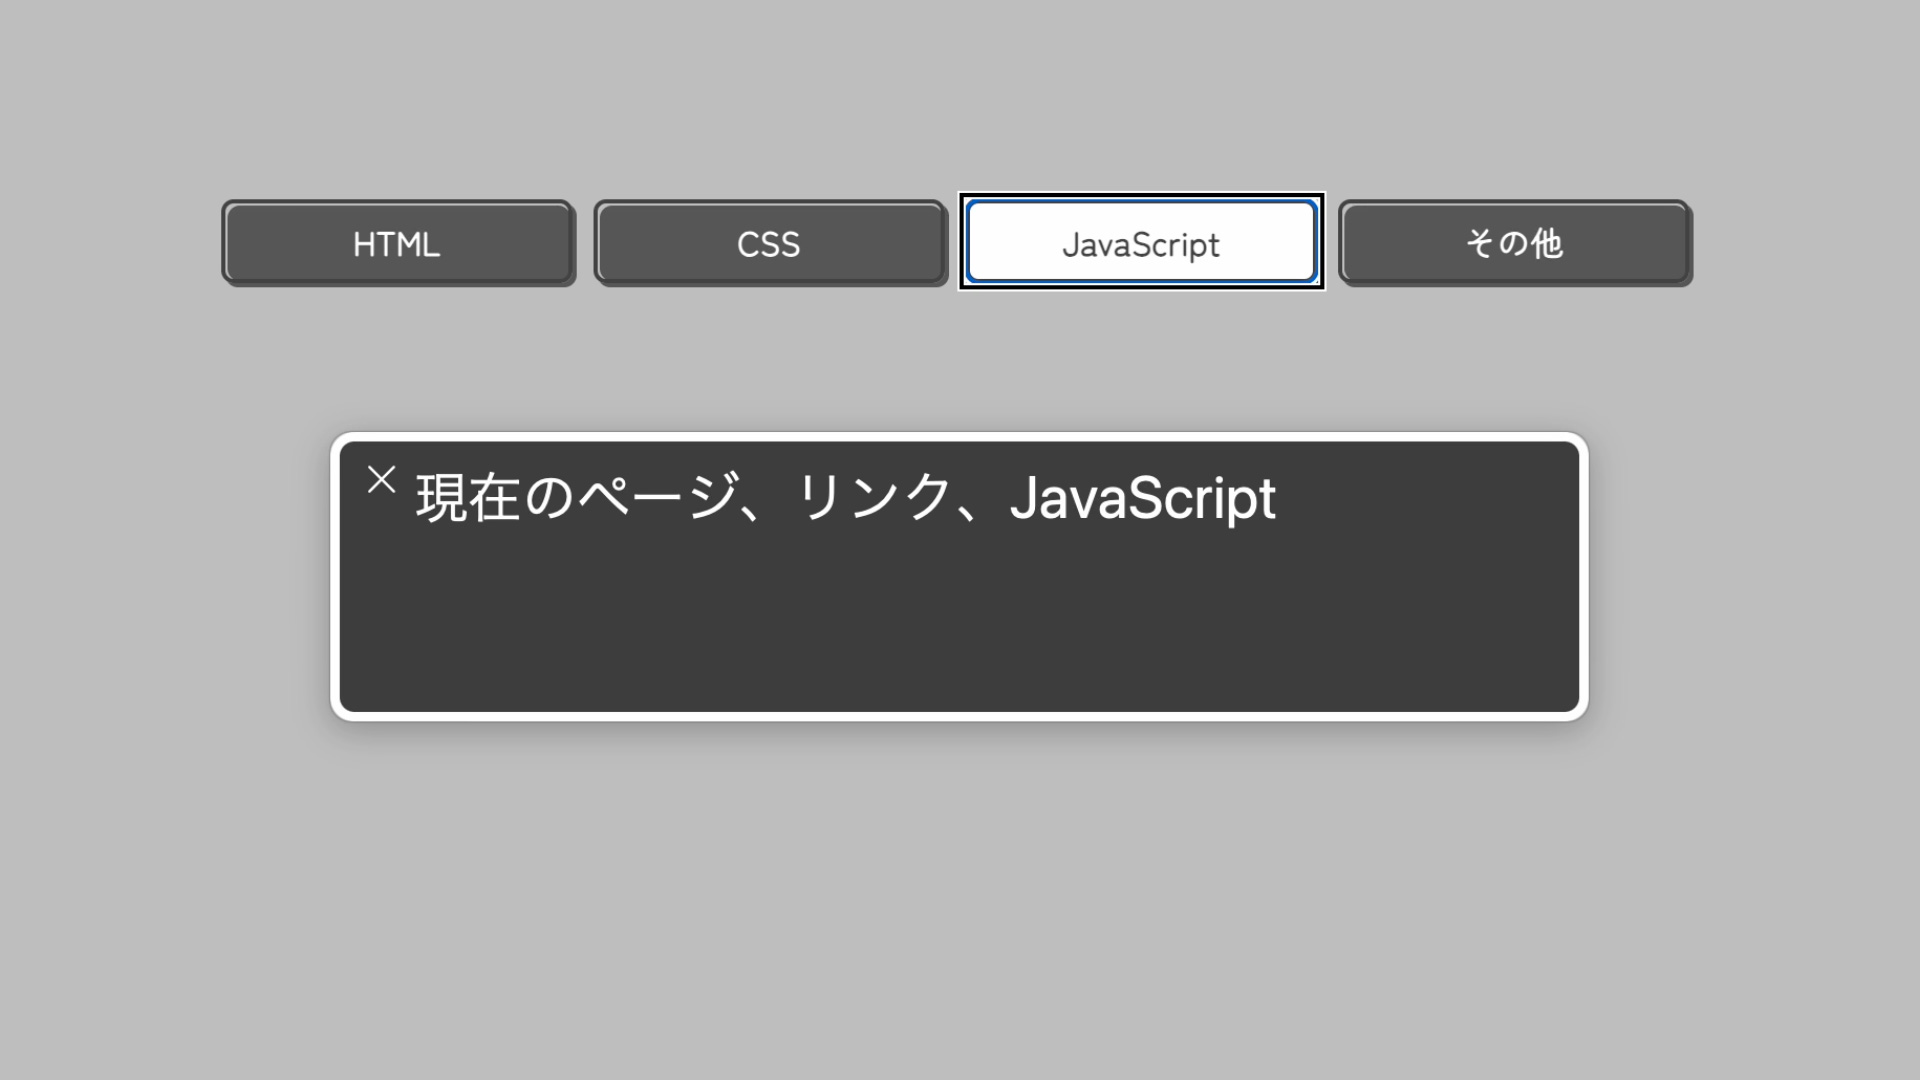 ウィンドウ上の黒いパネルに、現在のページ、リンク、JavaScript、と表示されている。